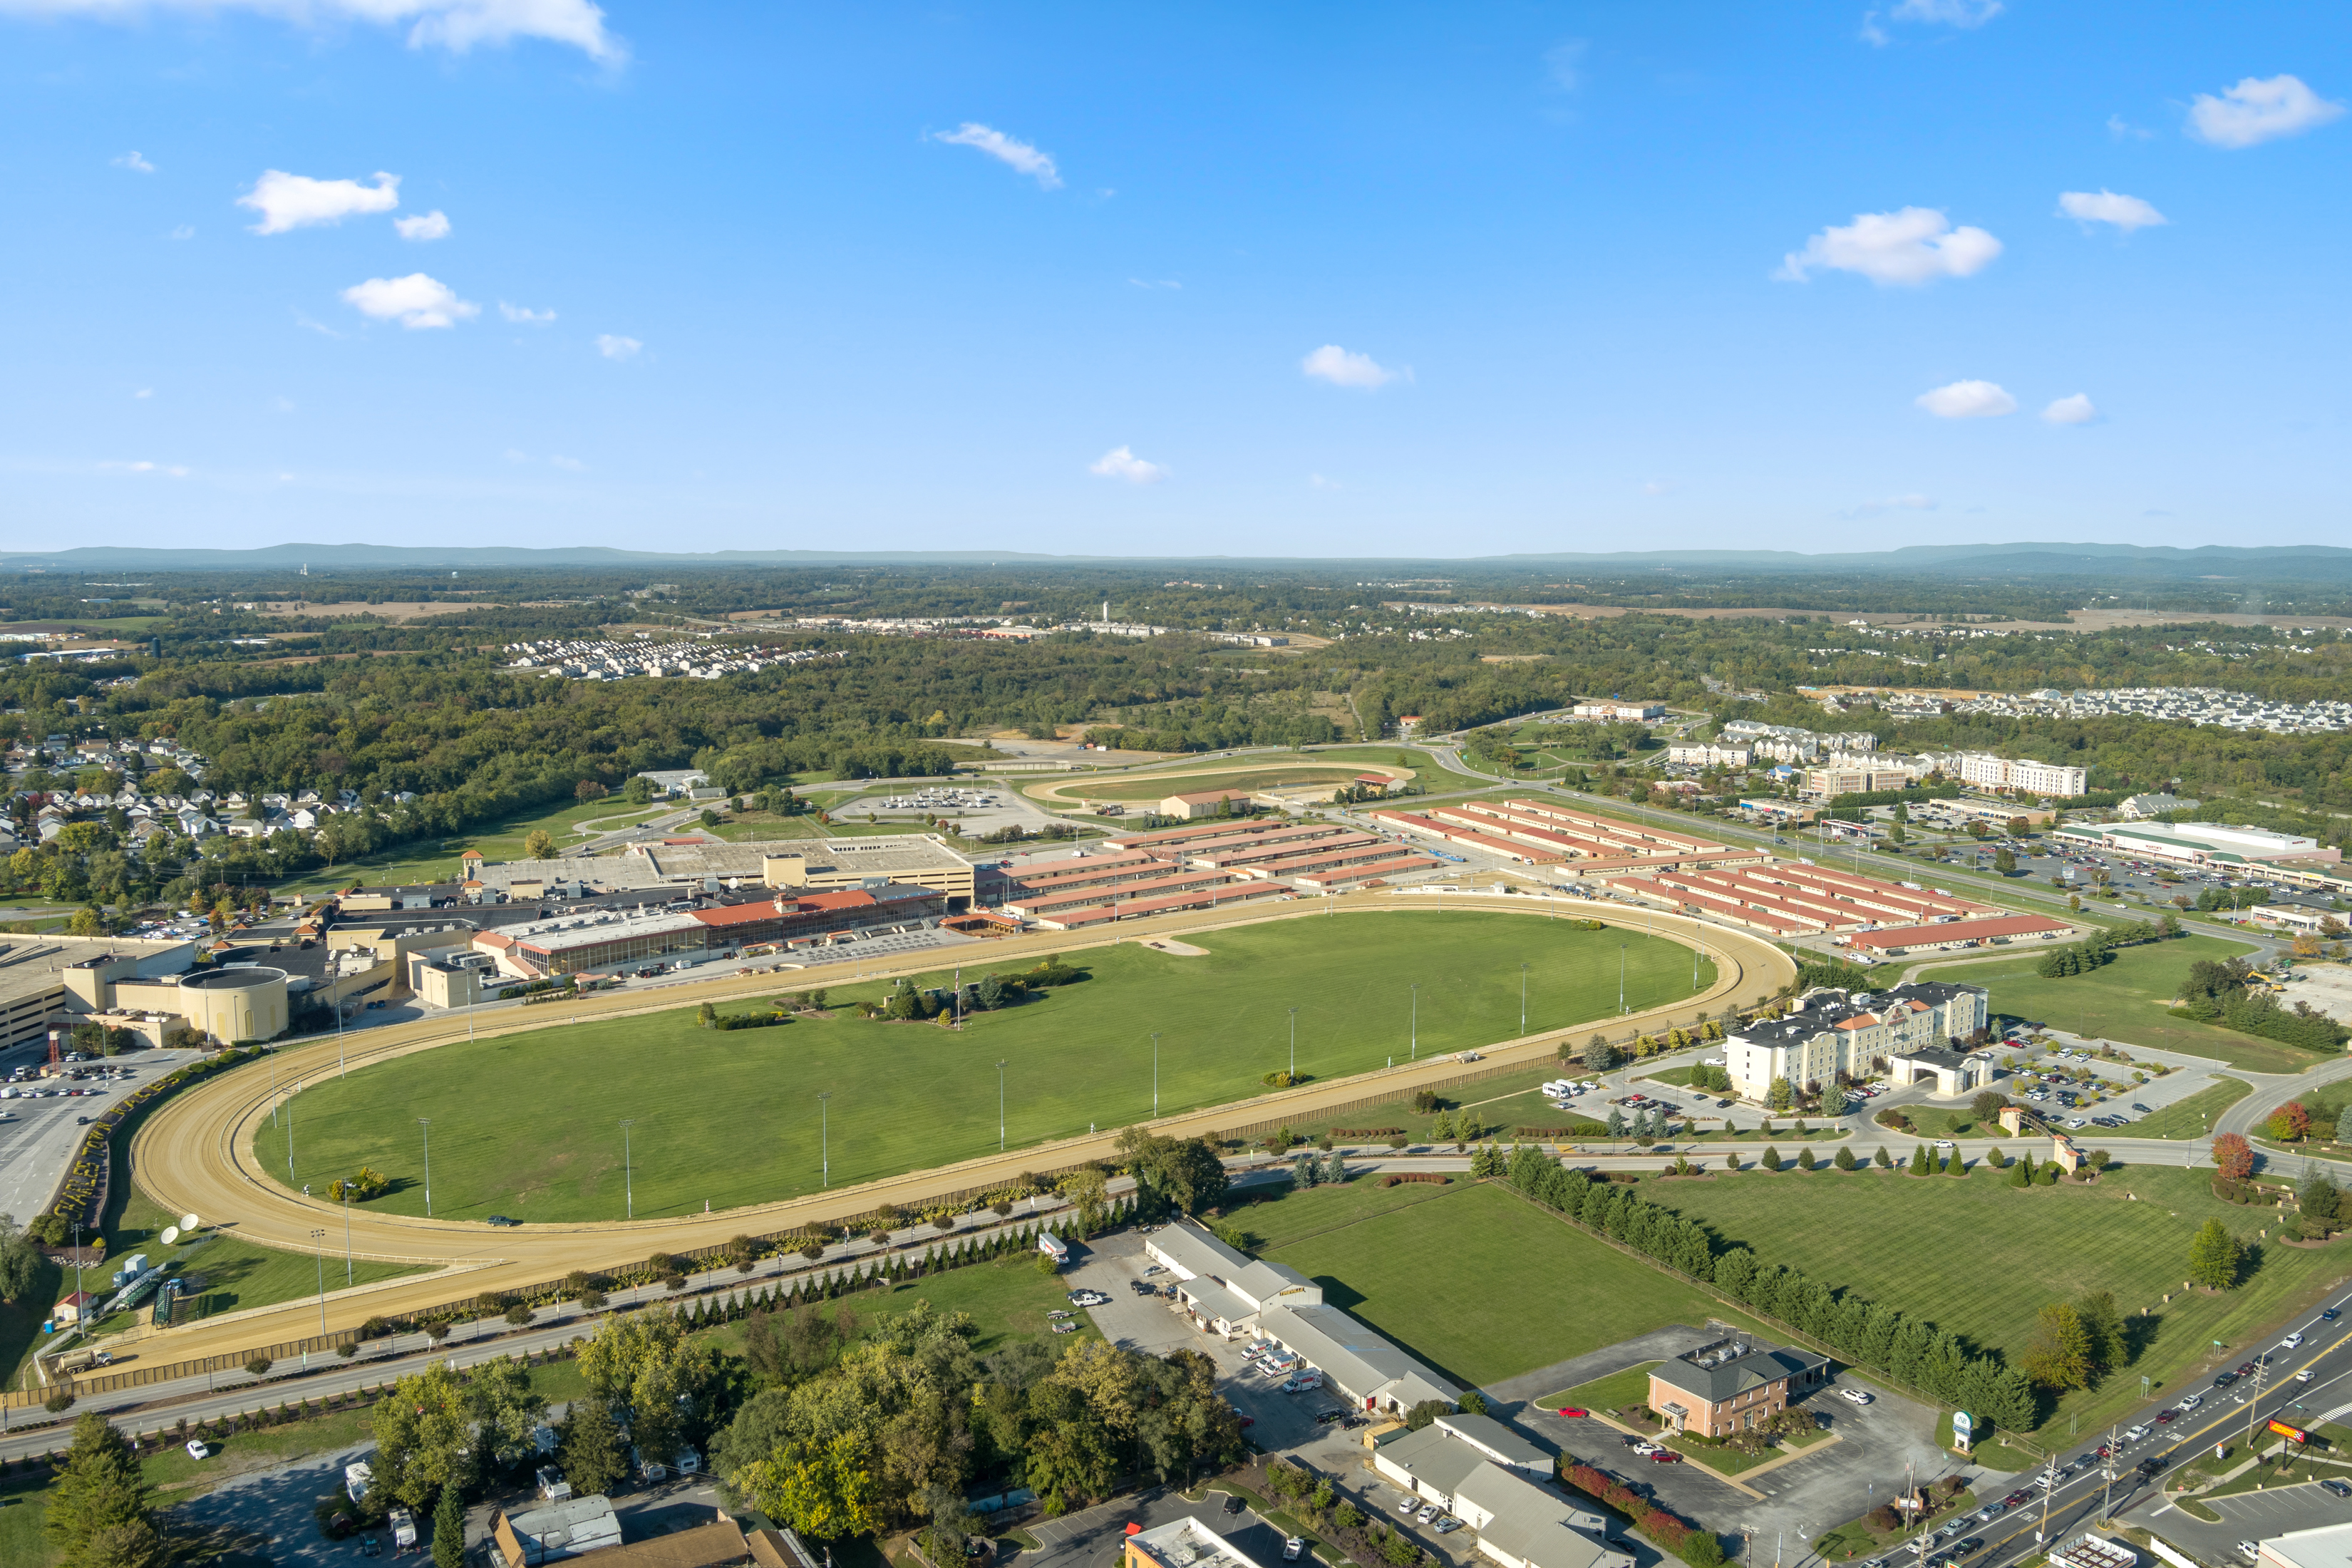 Aerial view of stadium in Ranson, WV